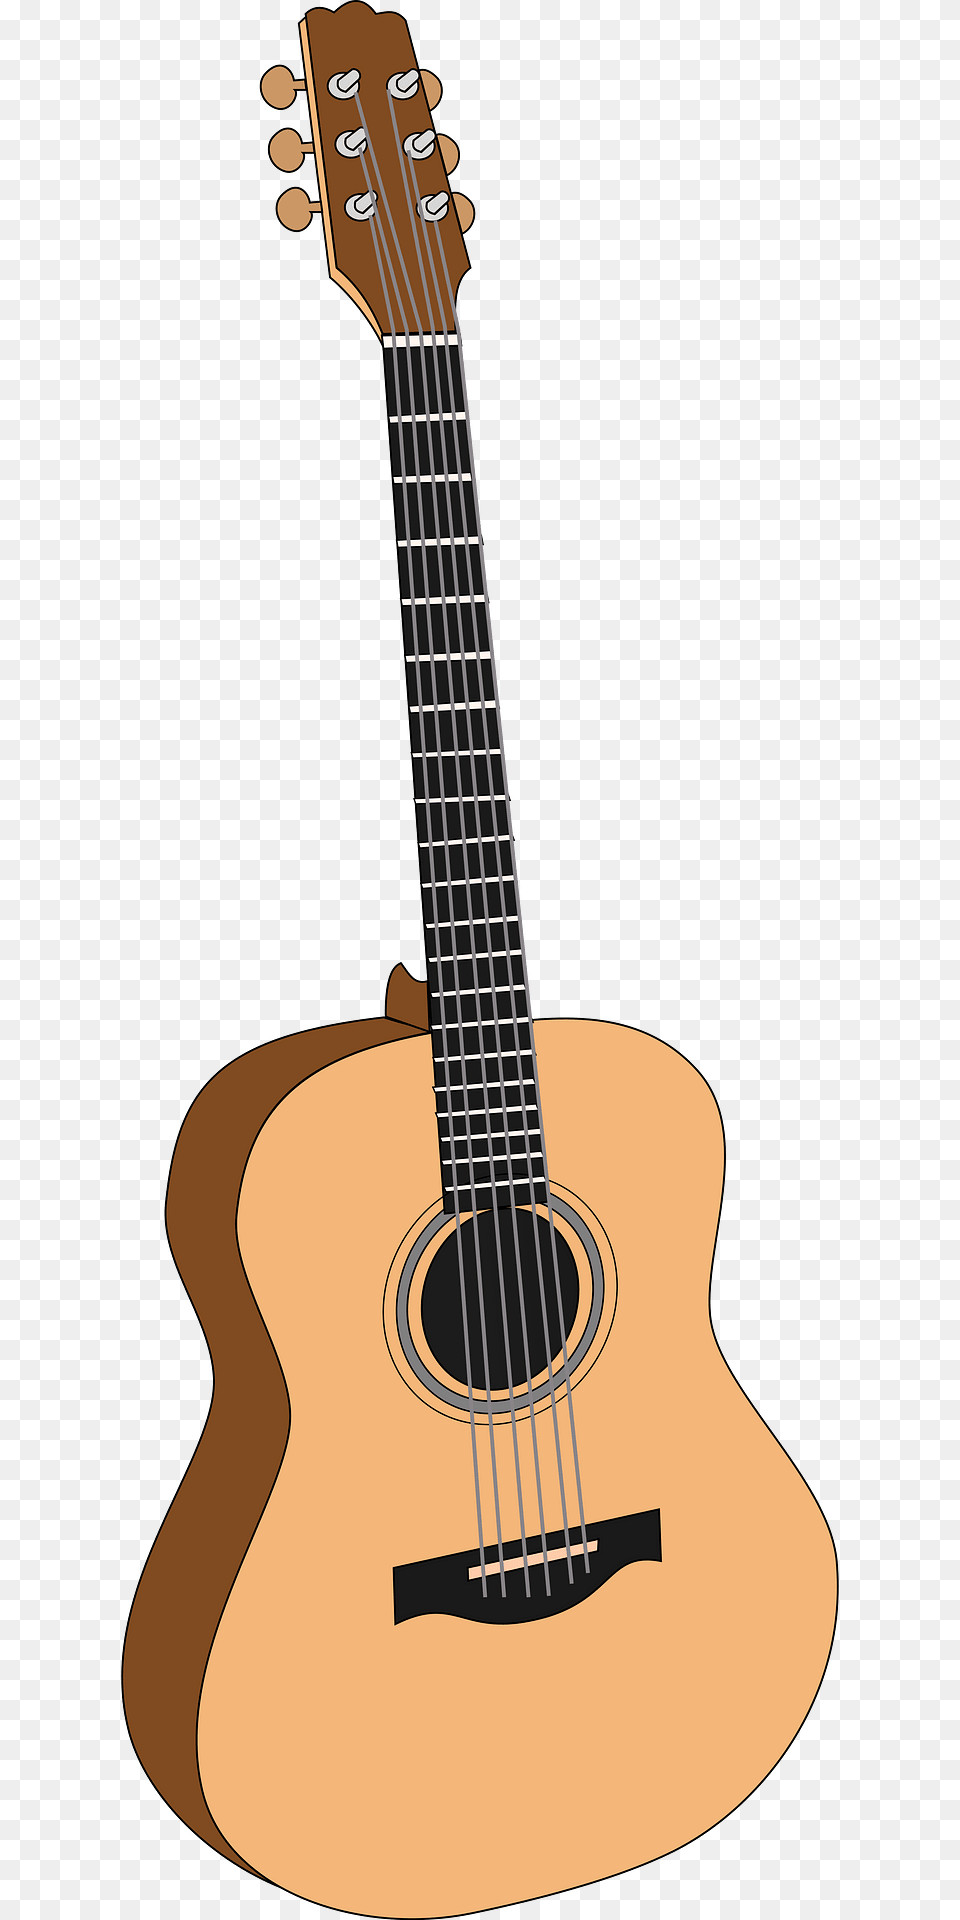 Guitar Clipart, Bass Guitar, Musical Instrument Png